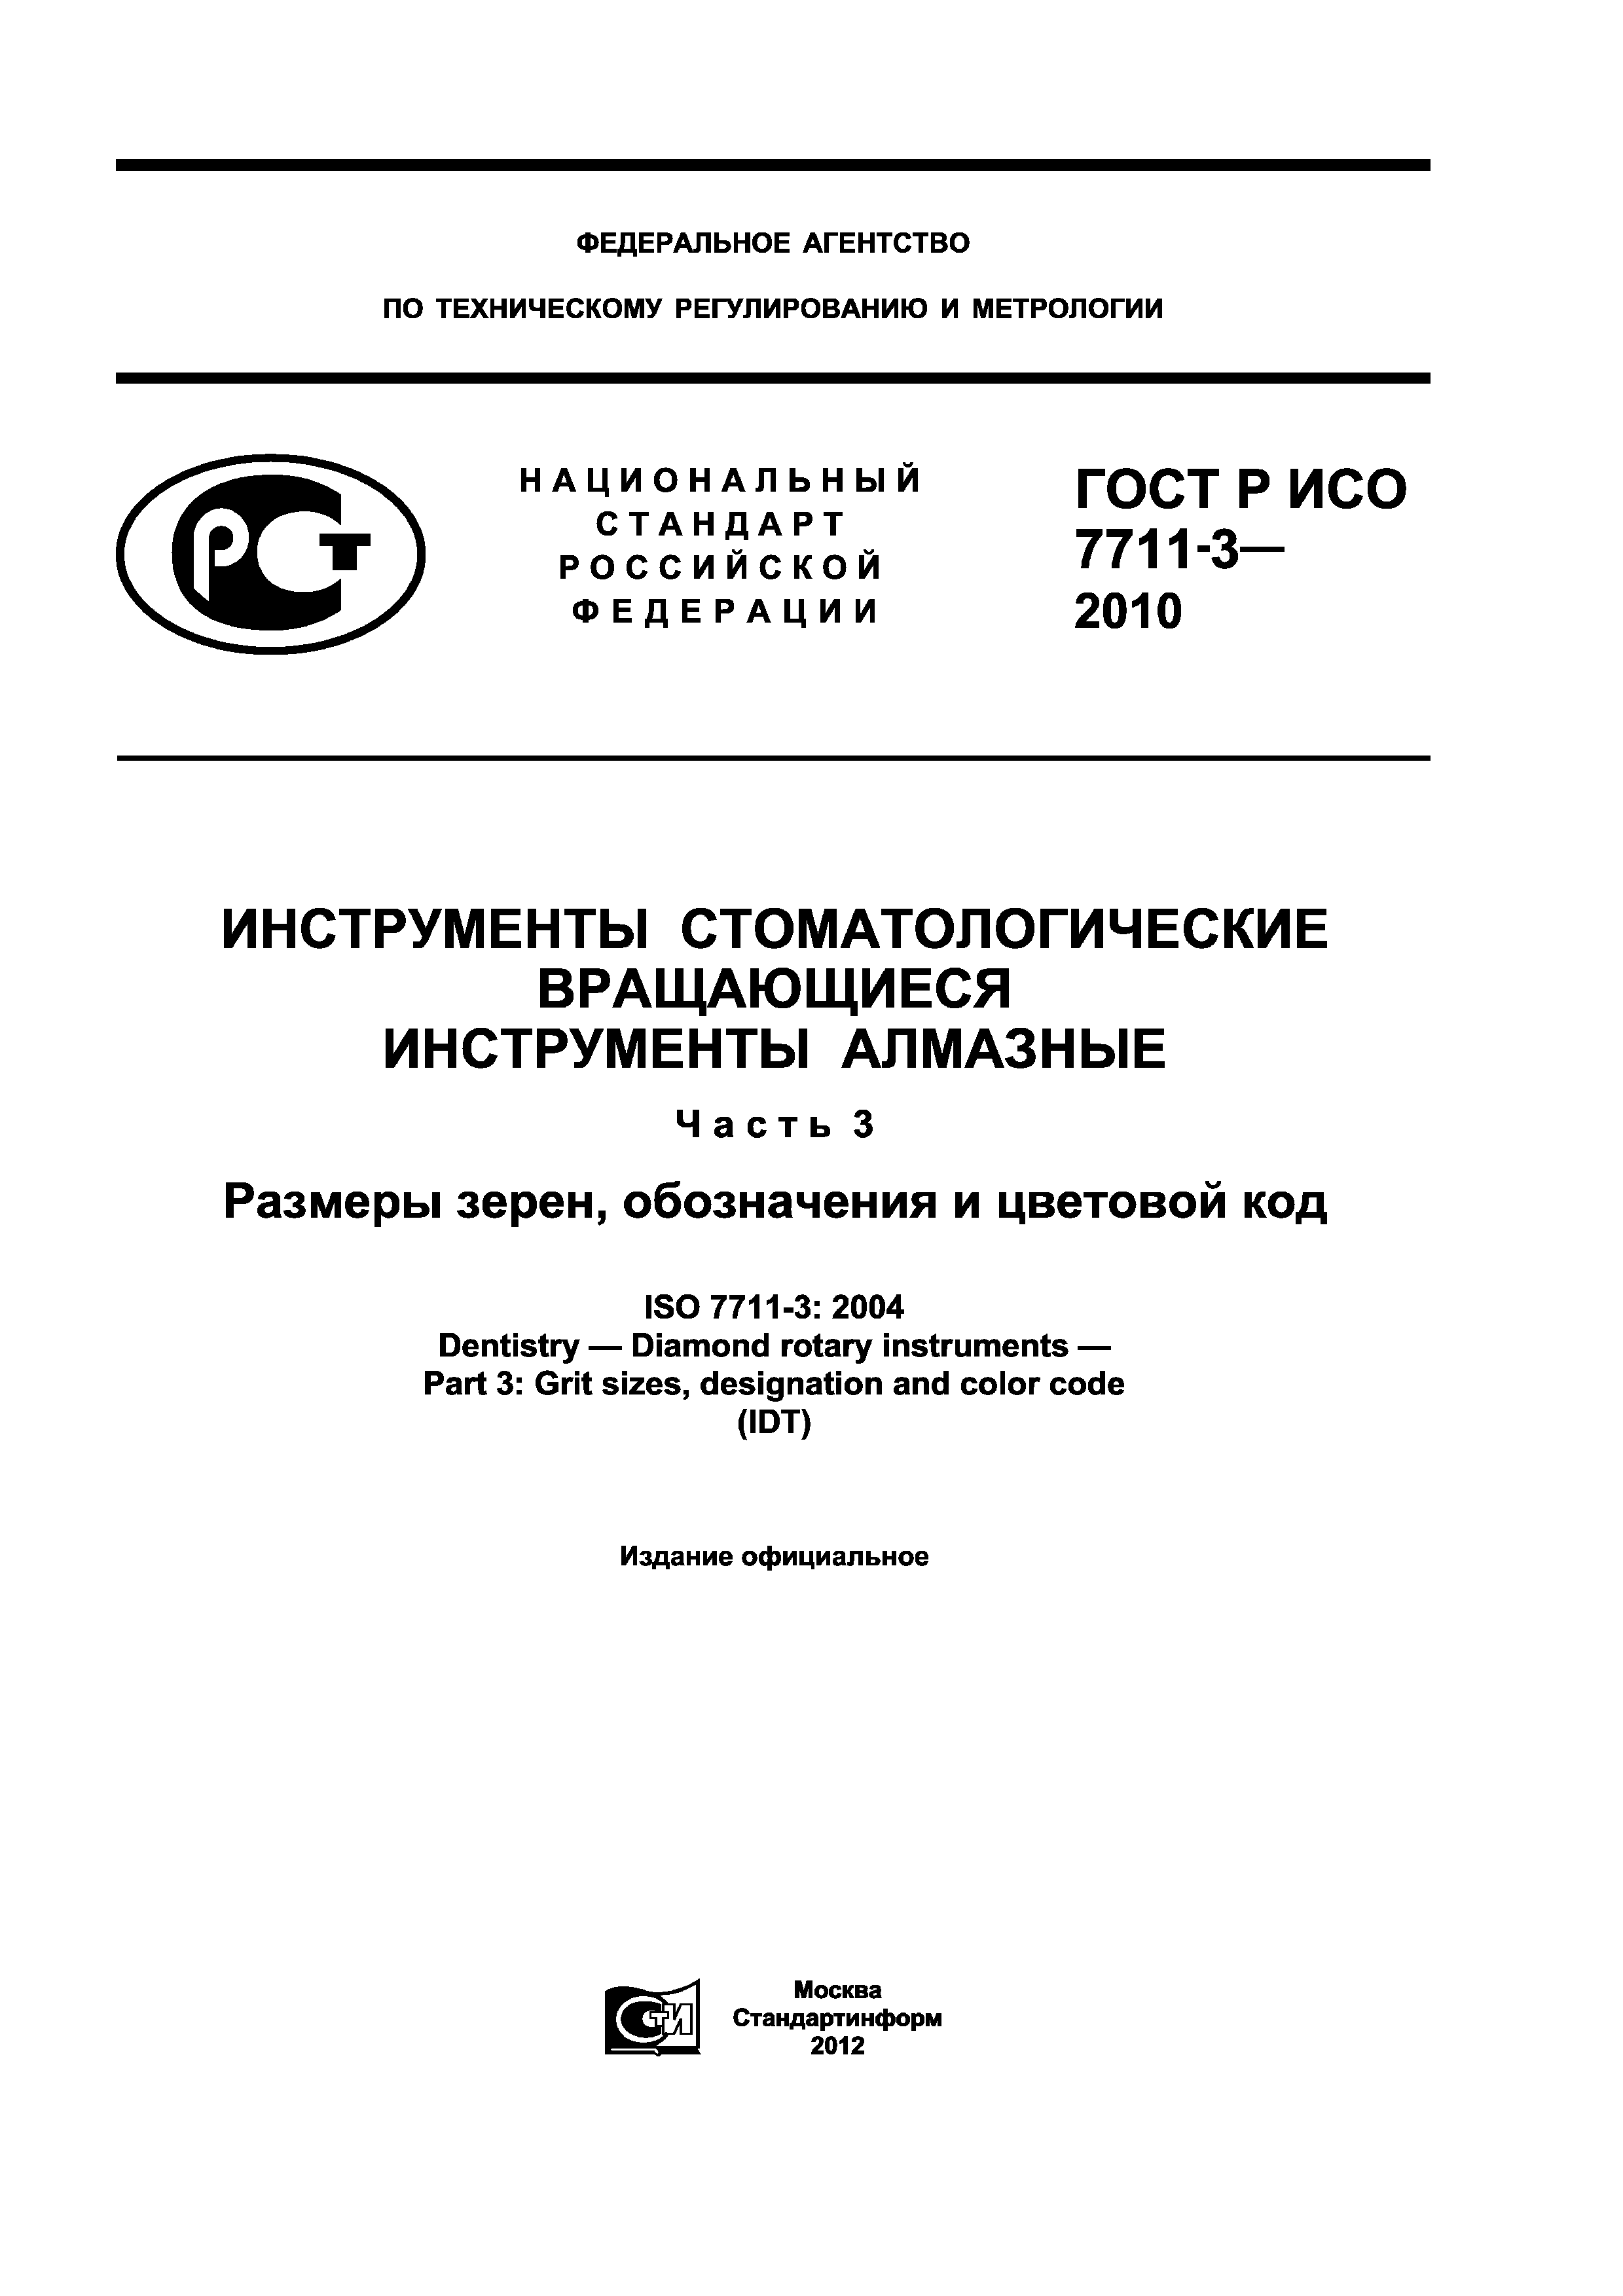 ГОСТ Р ИСО 7711-3-2010